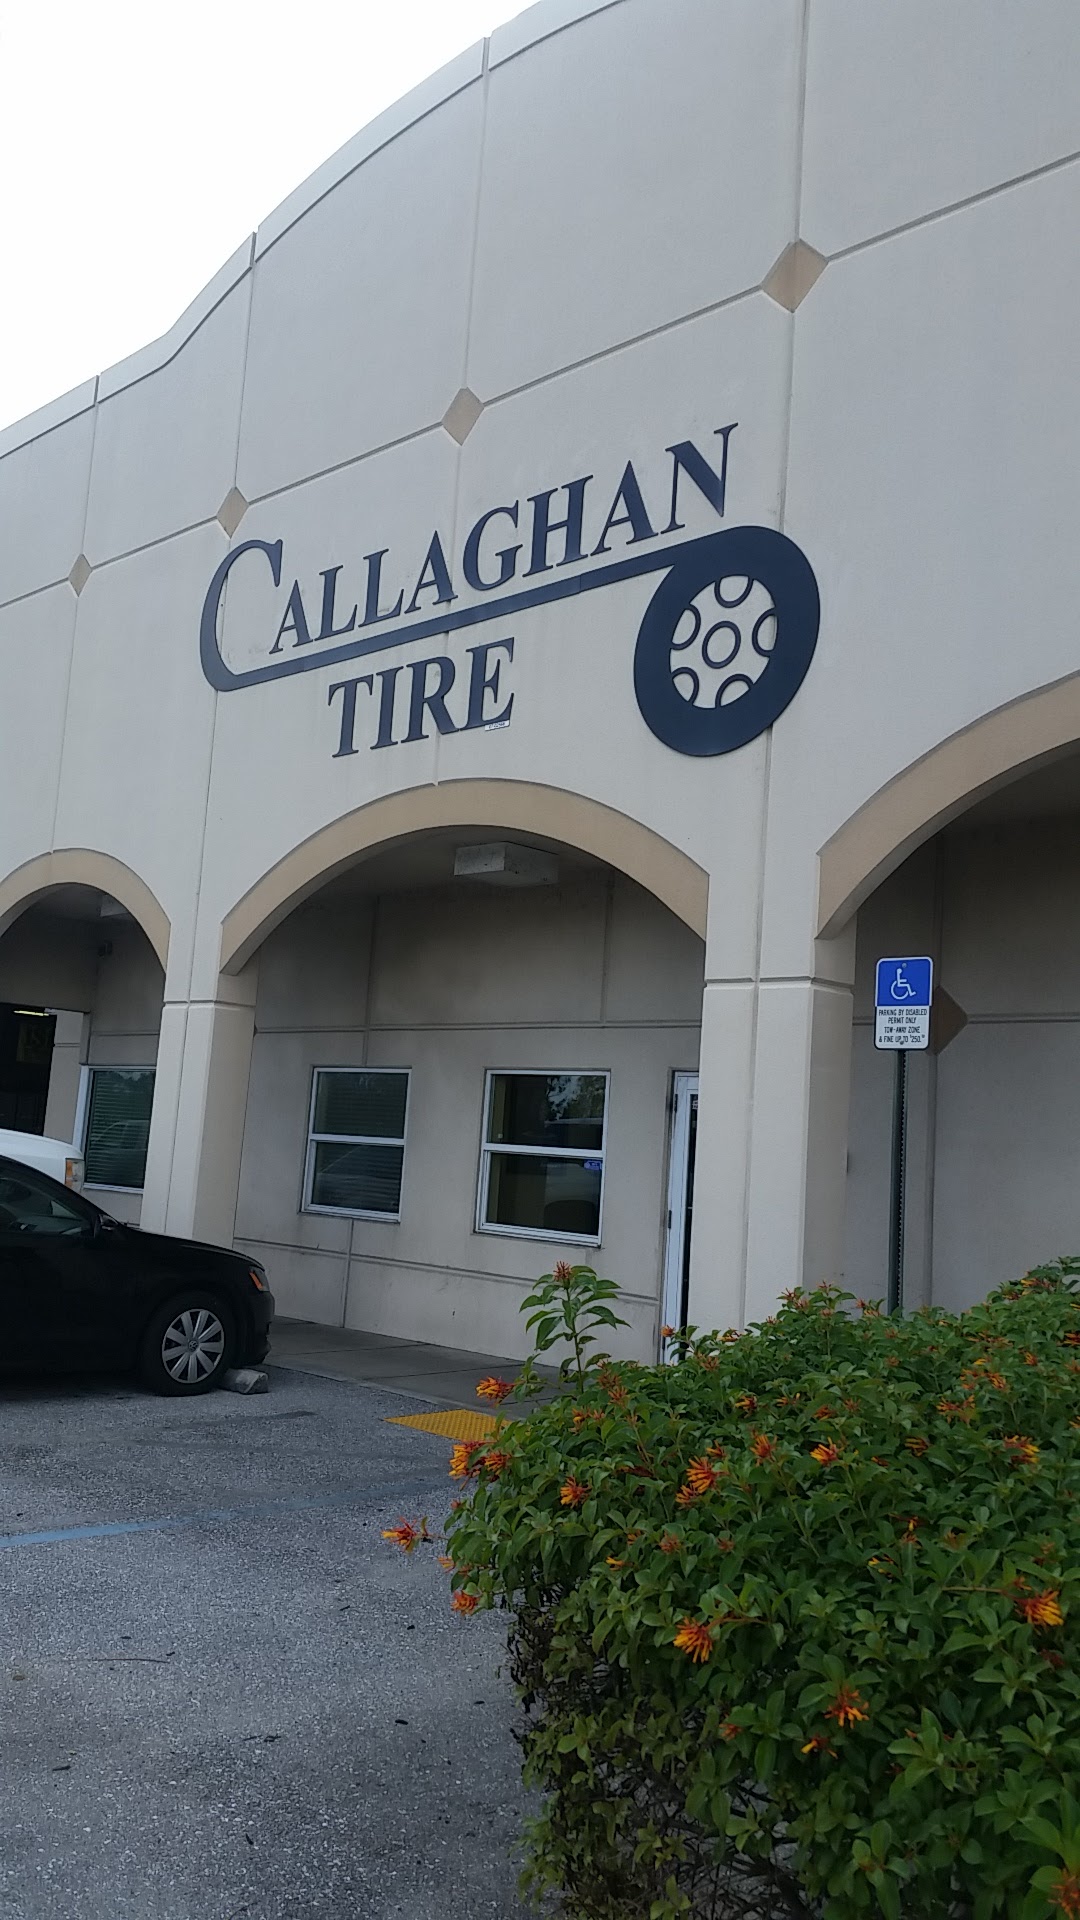 Callaghan Tire